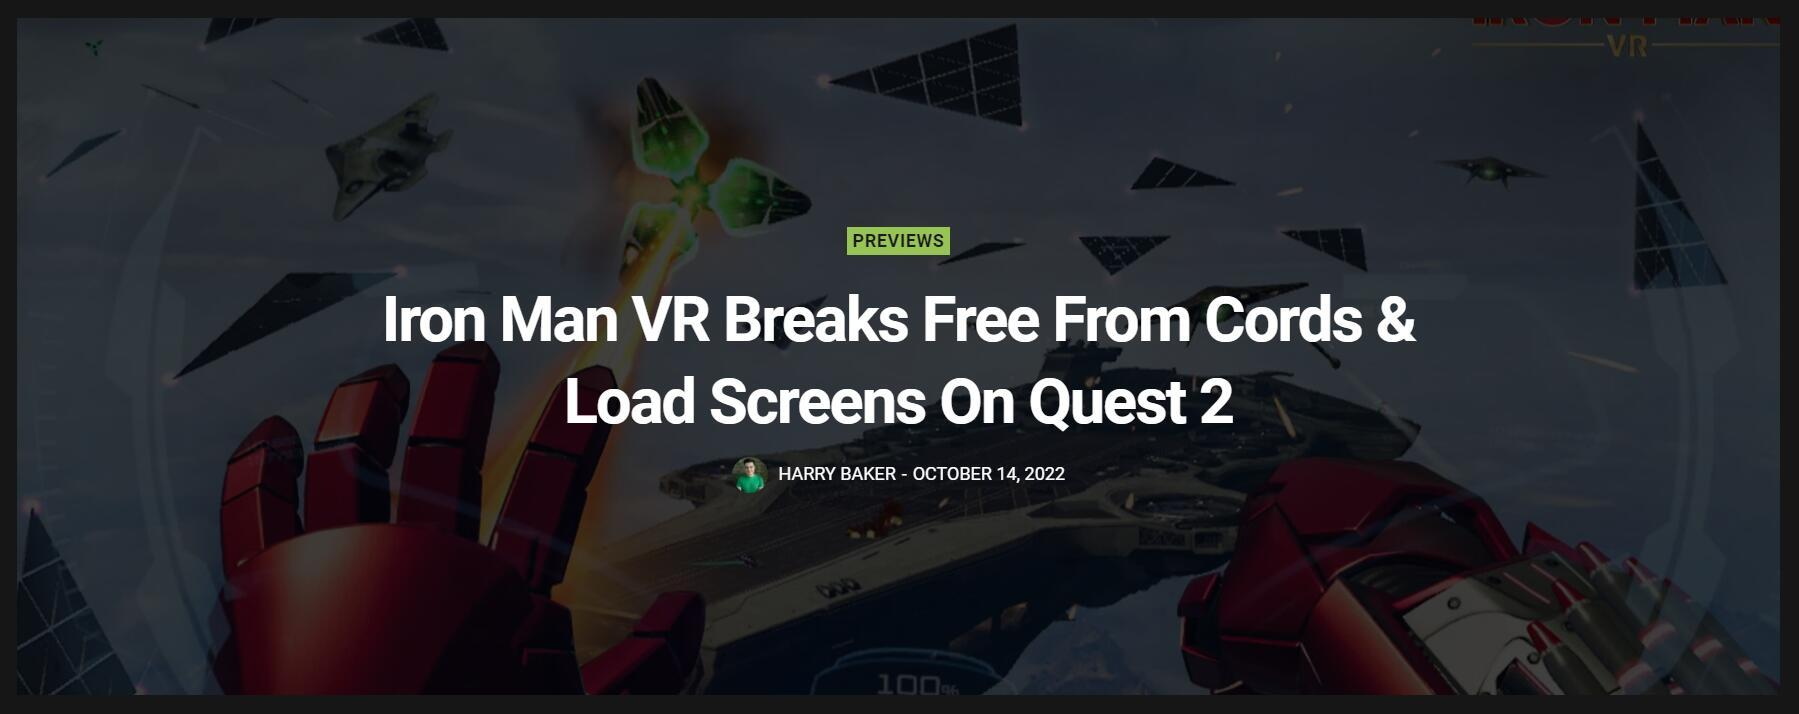 【《钢铁侠VR》登Quest 2后加载速度变快】2020年的《漫威钢铁侠》是一款PS VR游戏，当时仅登陆了PS4平台。